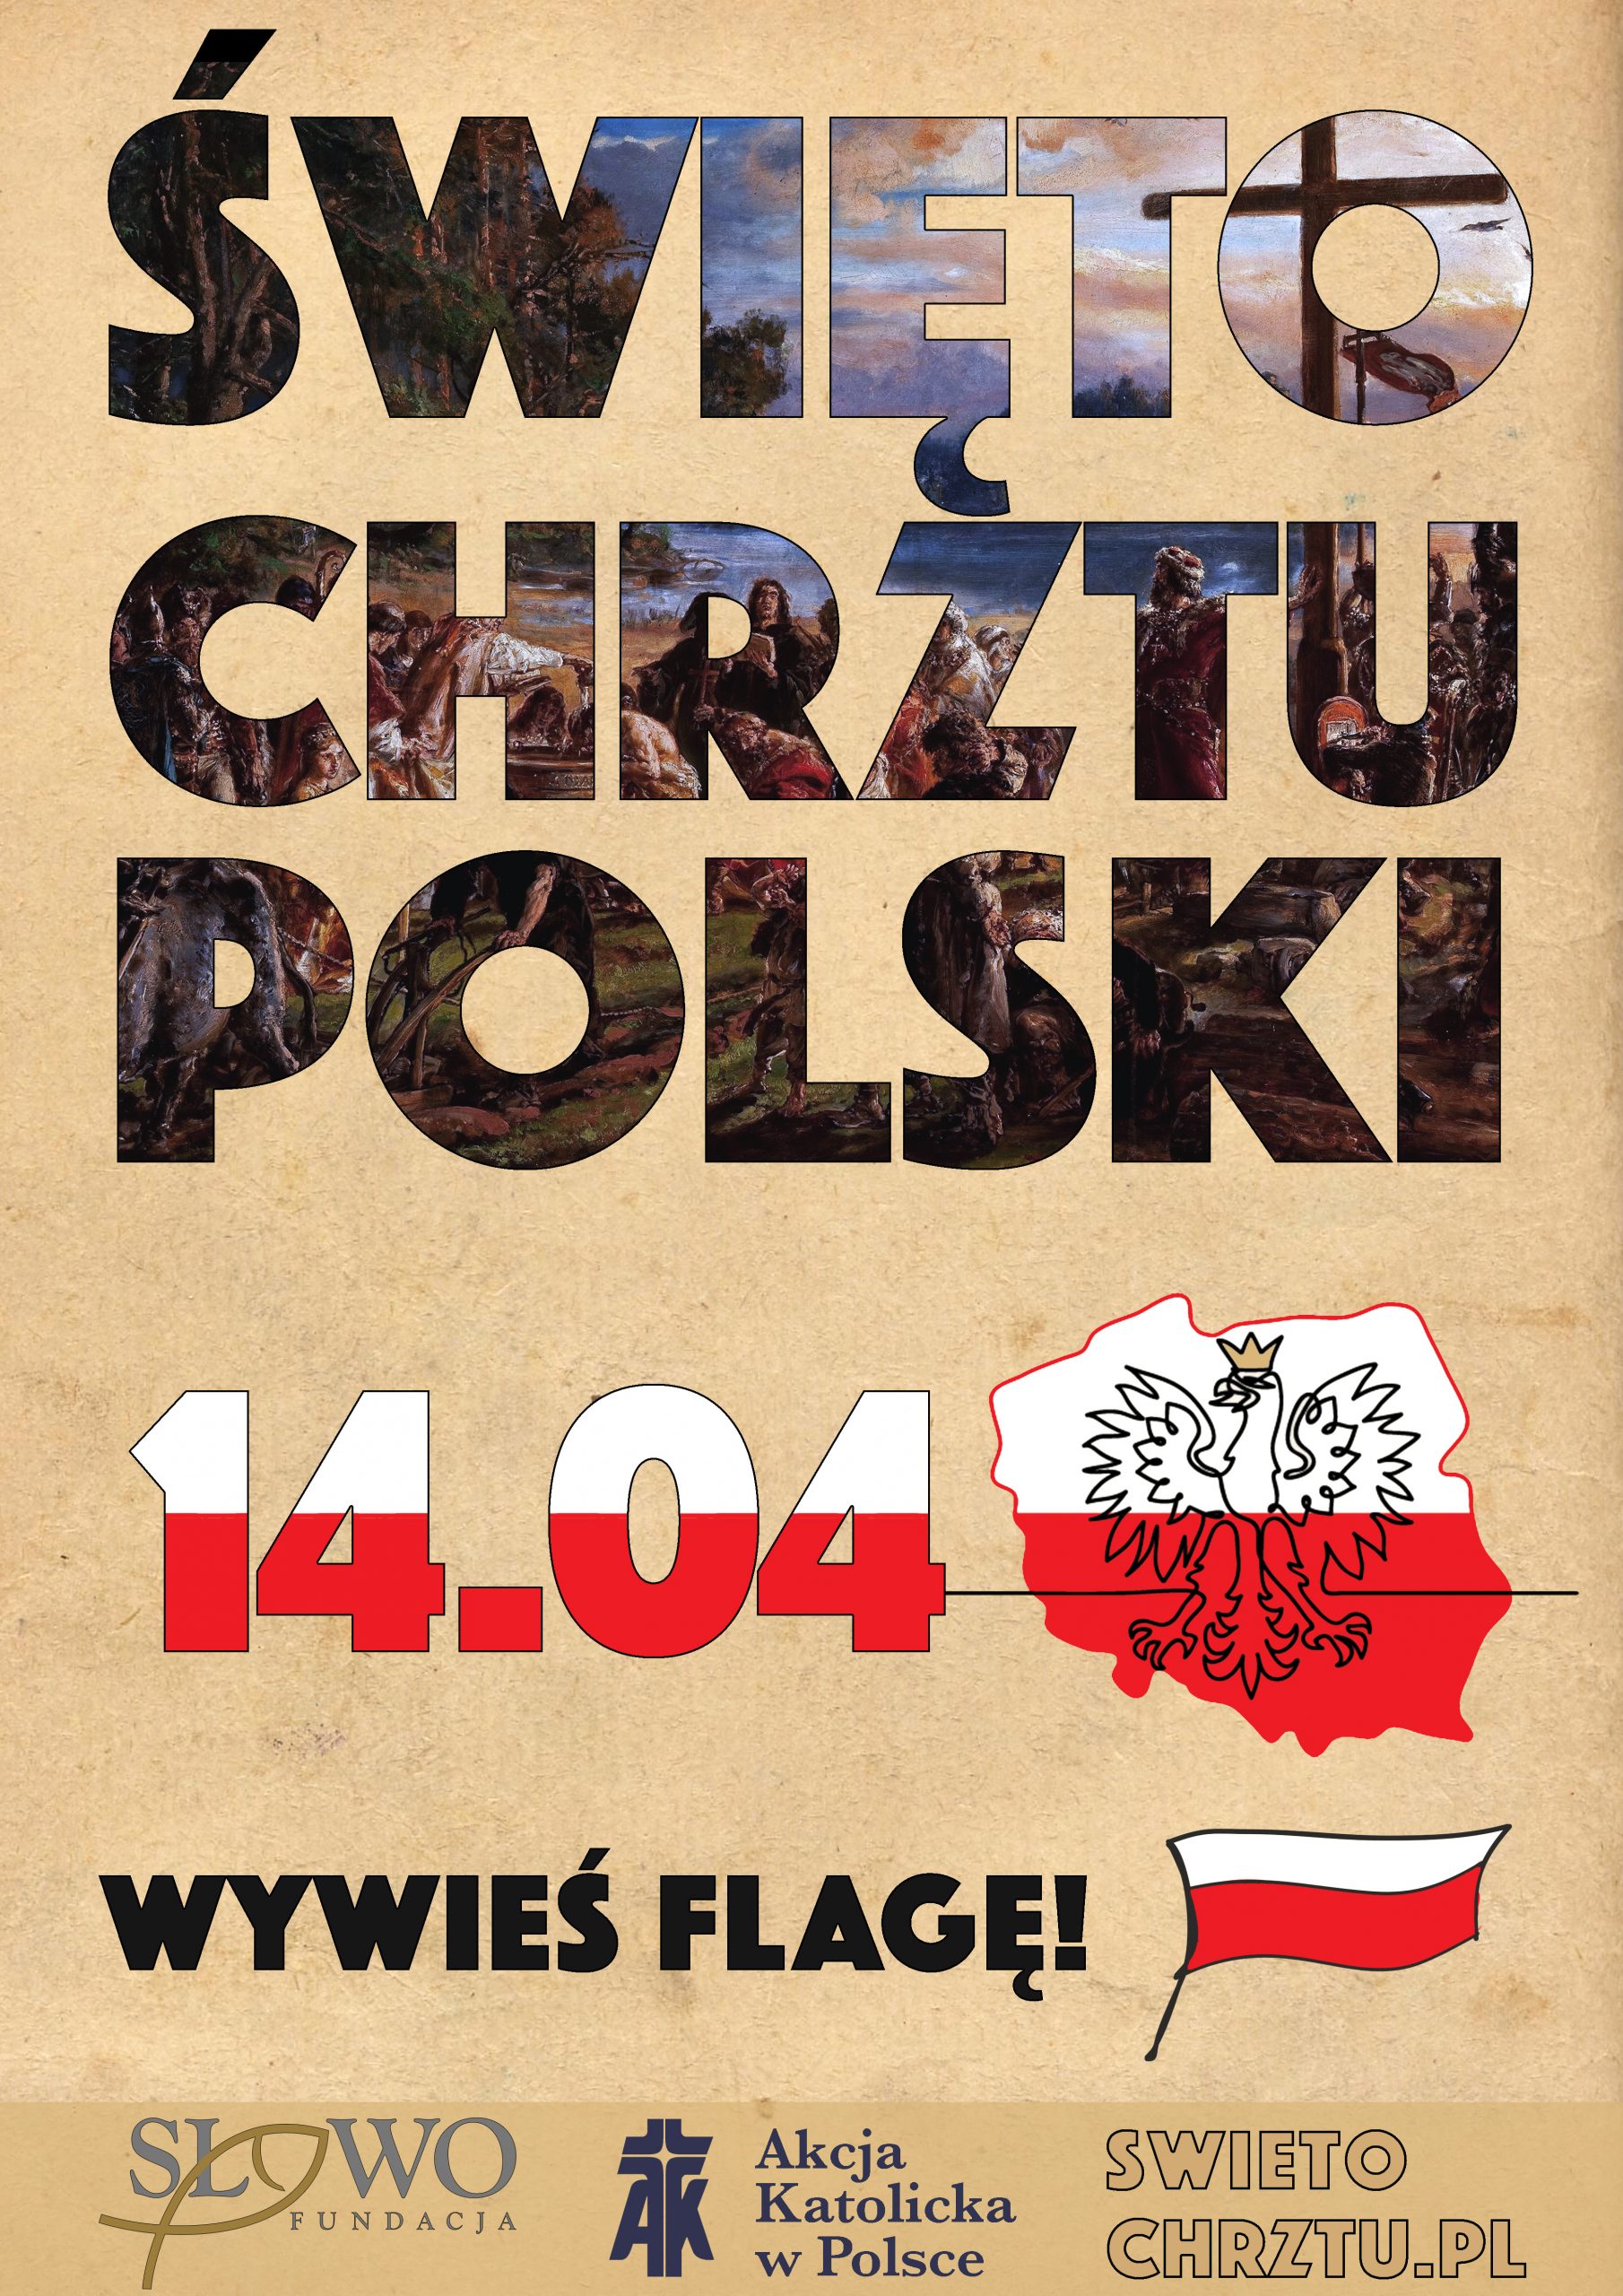 swieto-chrztu-polski